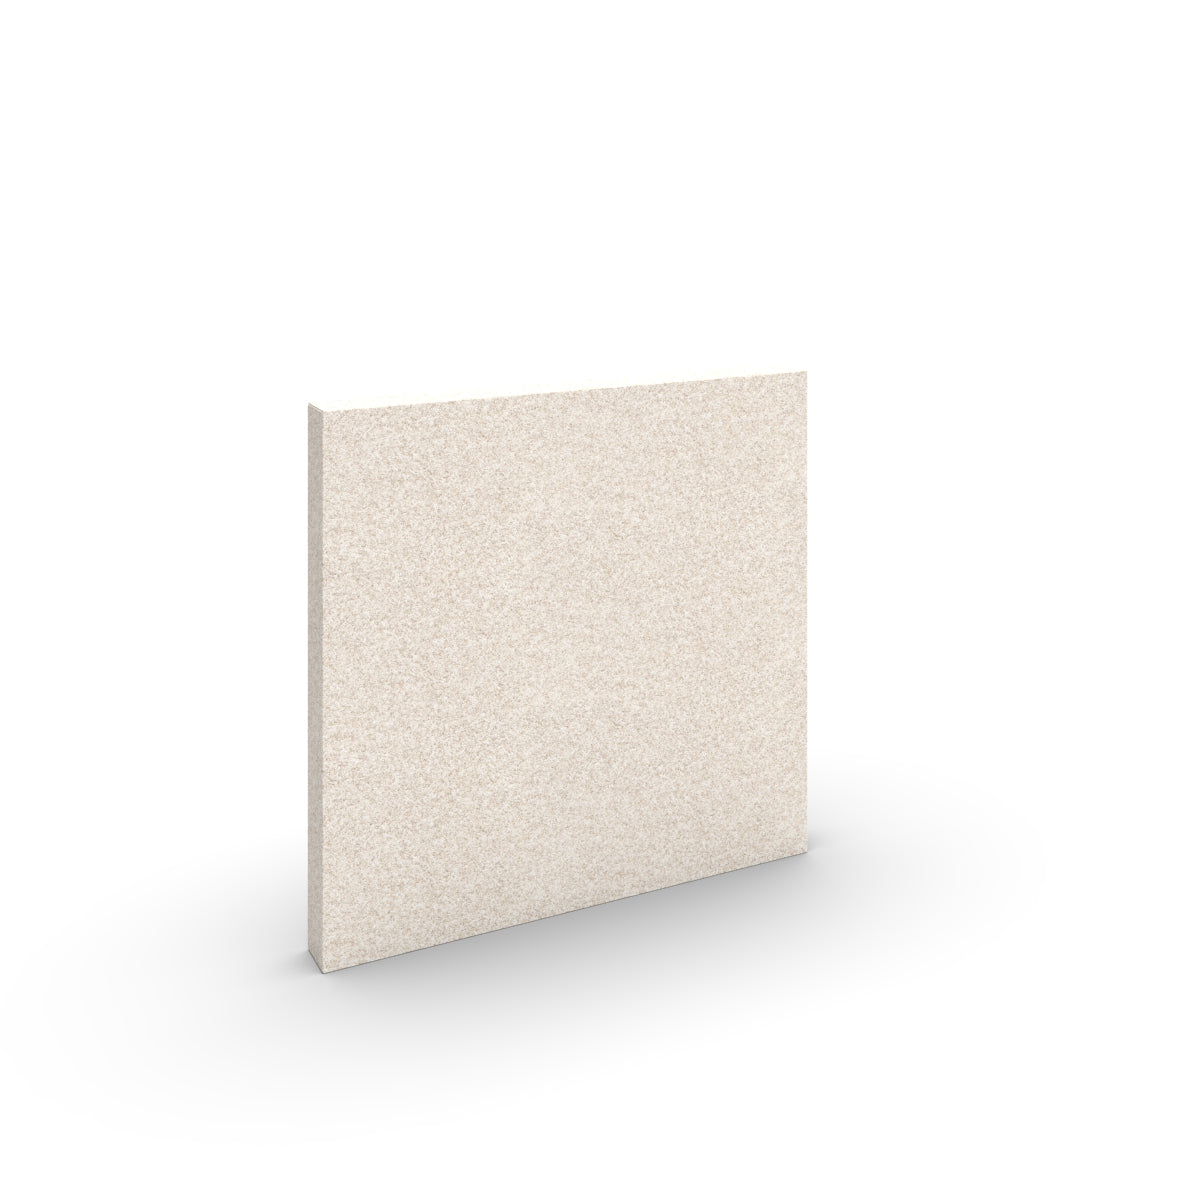 Square Basic wall sound absorber in natural beige acoustic wool felt. Akustikkplater og lyddemping vegg